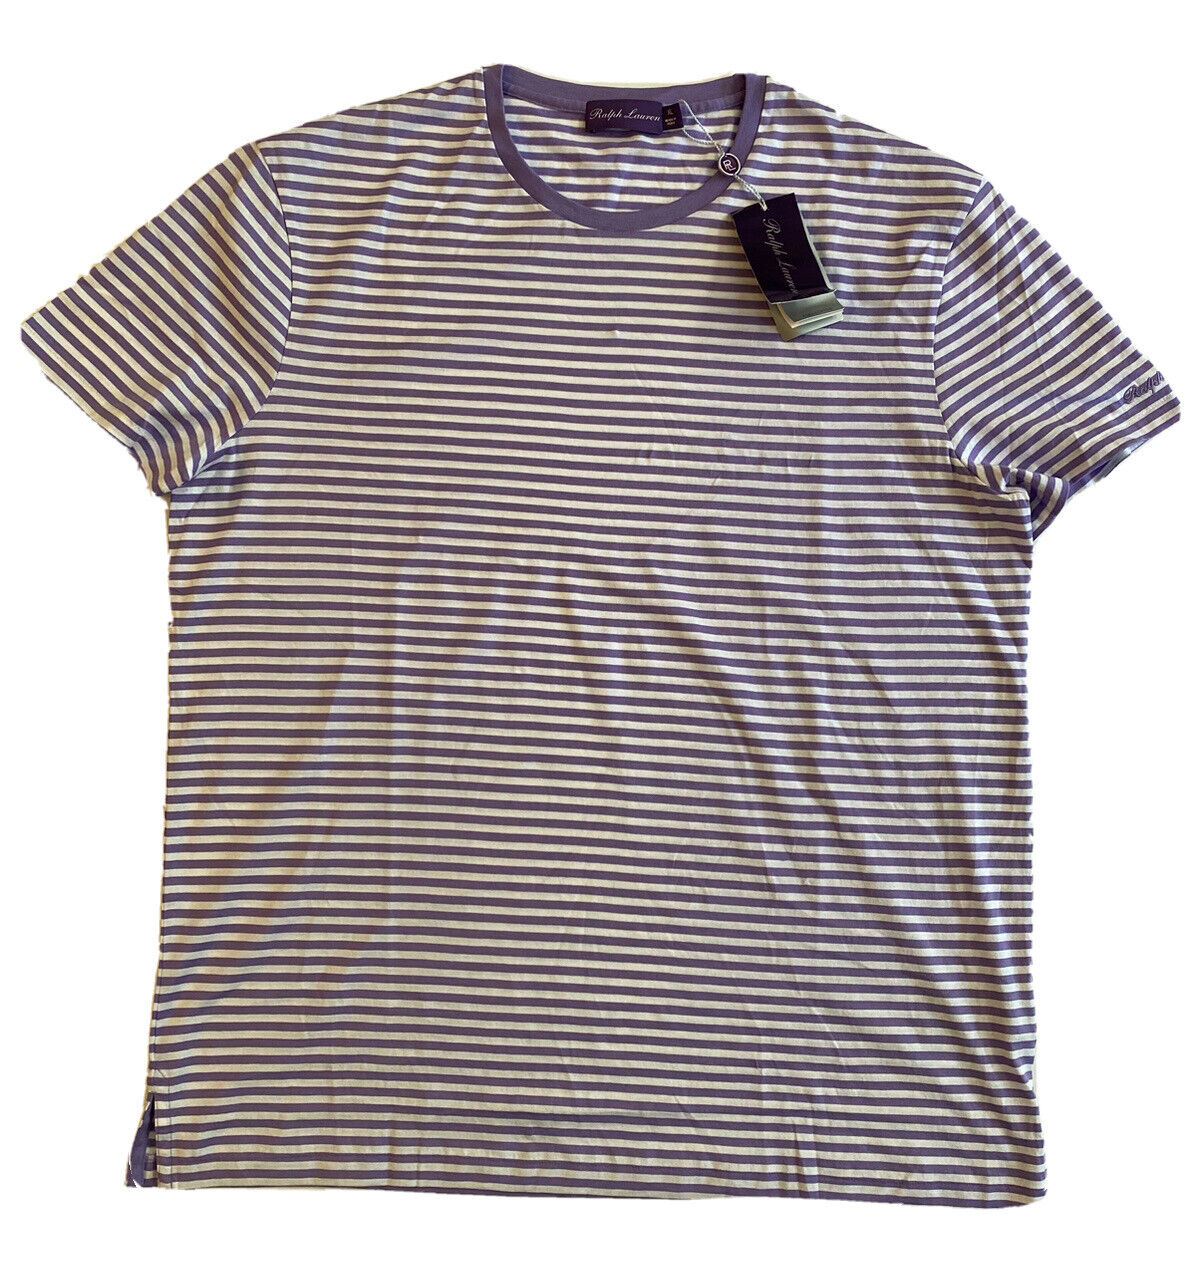 Neu mit Etikett: 195 $ Ralph Lauren Purple Label Lavendel gestreiftes Jersey-T-Shirt XL 